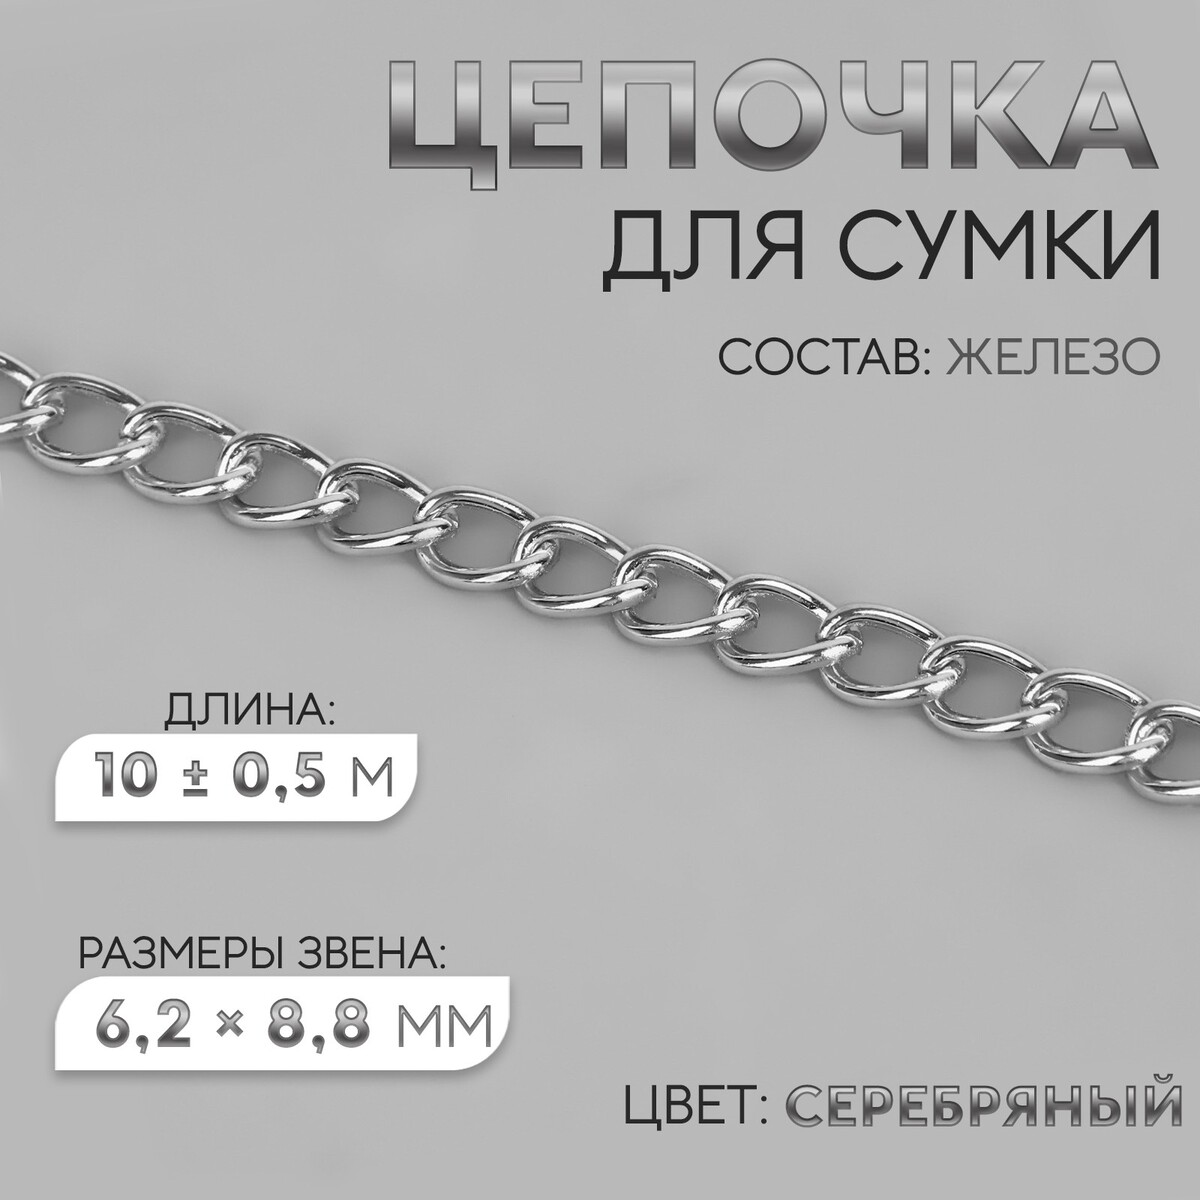 Цепочка для сумки, железная, 6,2 × 8,8 мм, 10 ± 0,5 м, цвет серебряный цепочка для сумки железная d 7 мм 10 ± 0 5 м серебряный